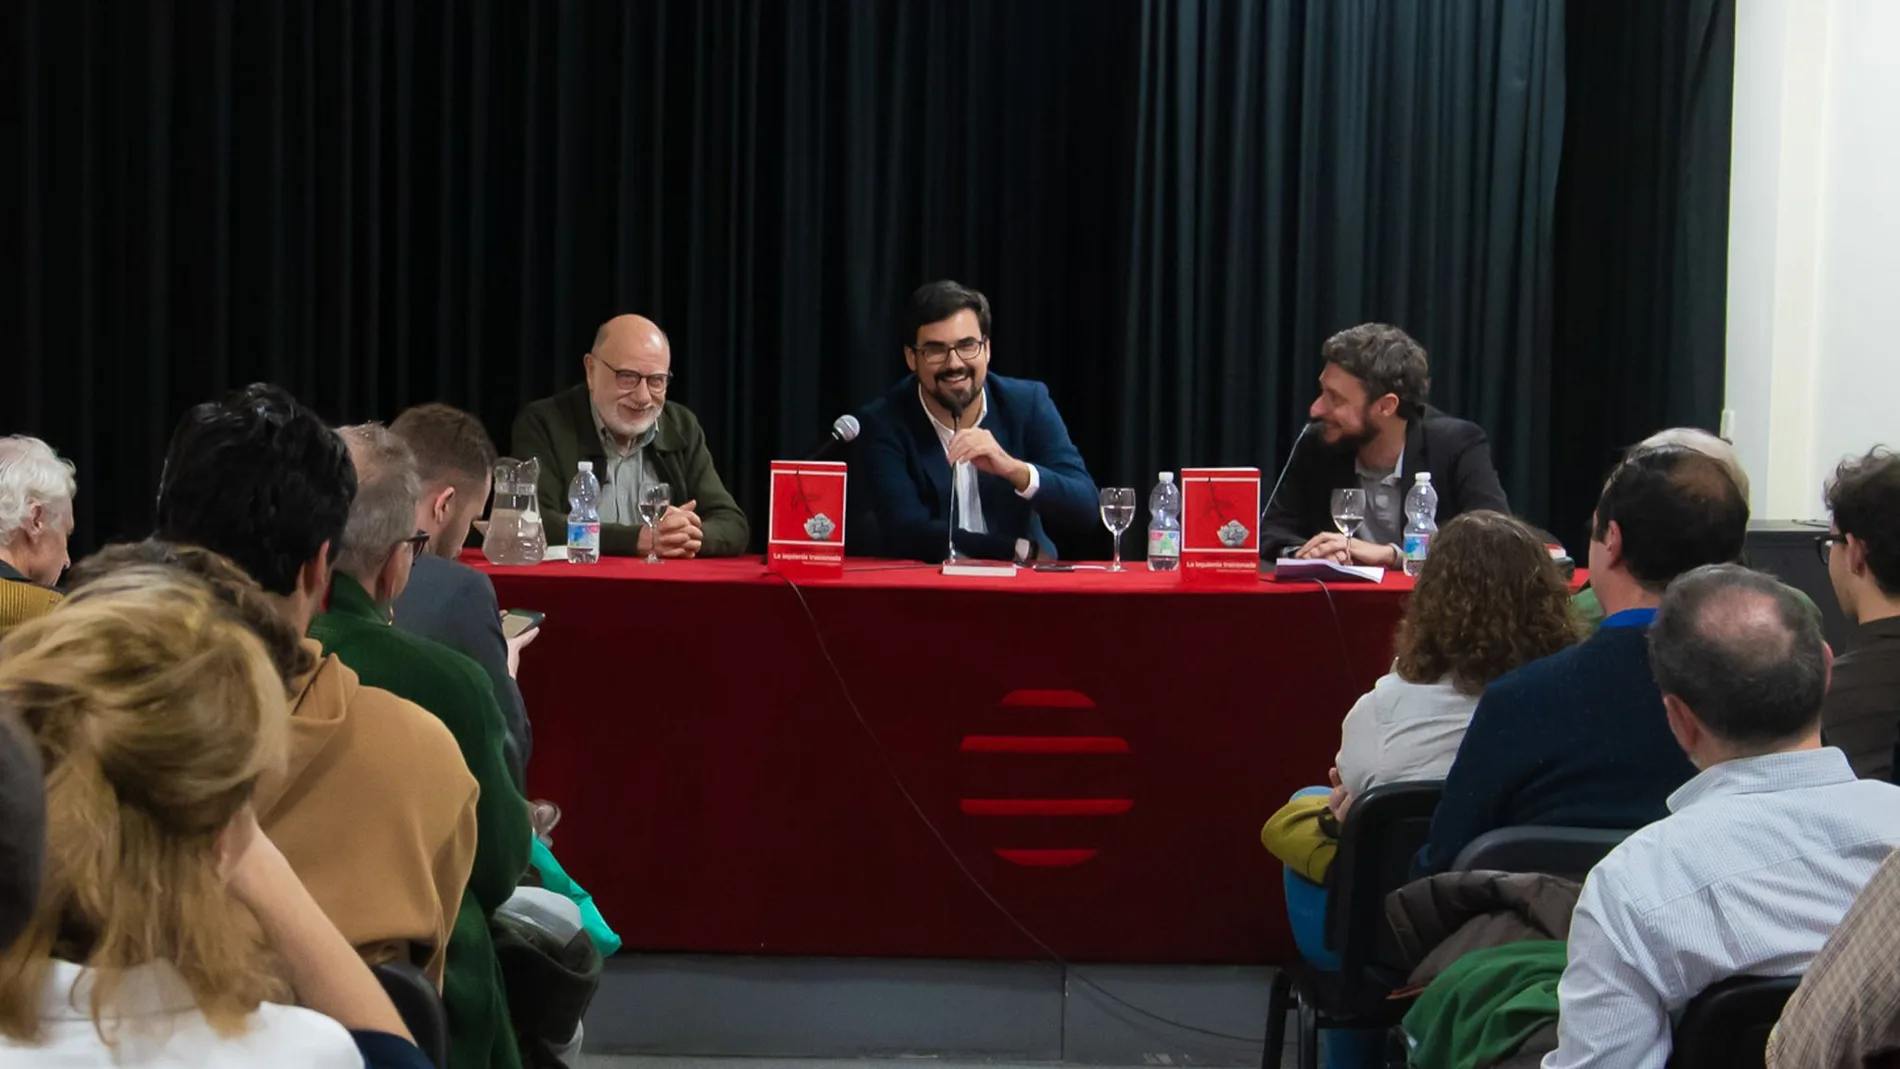 Nace Izquierda Española, un partido que busca ser la alternativa al PSOE